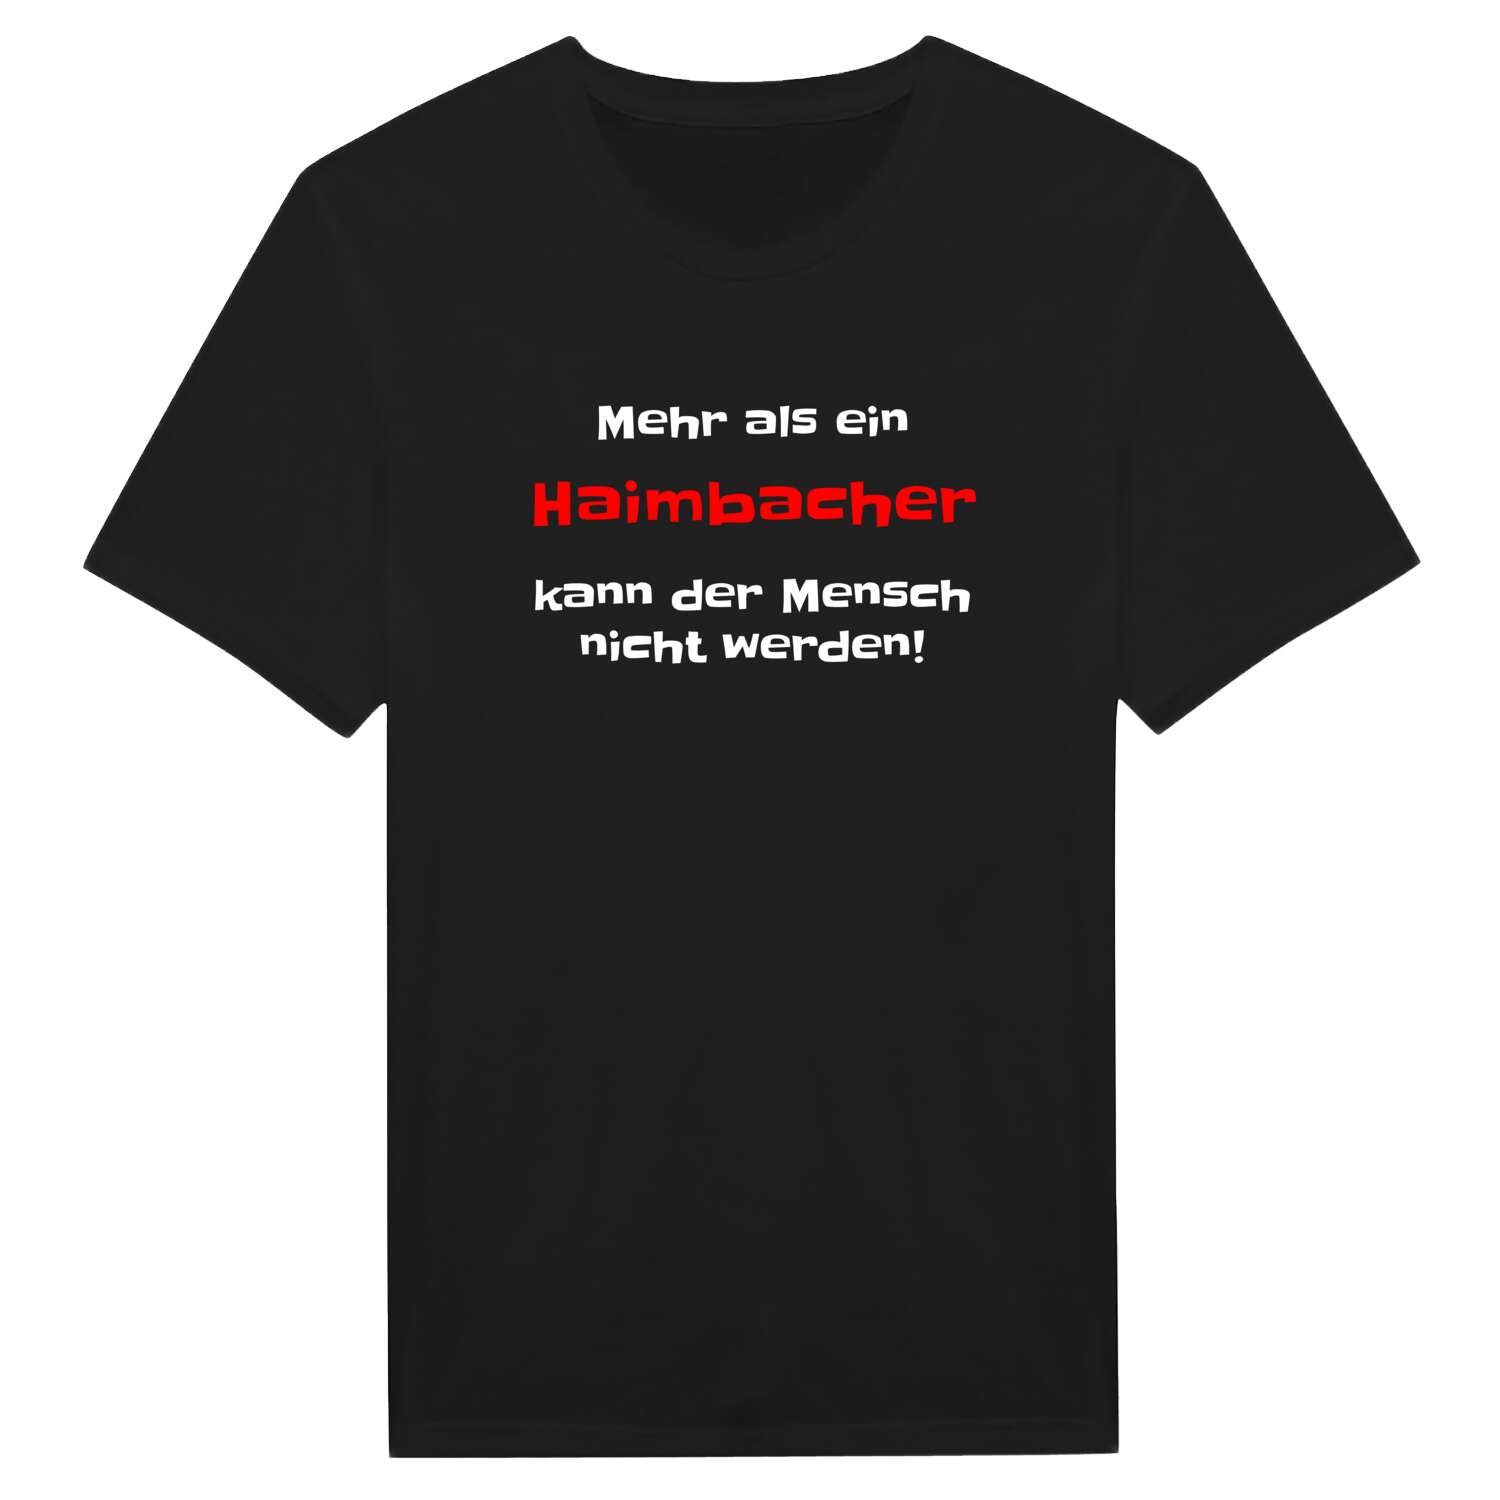 Haimbach T-Shirt »Mehr als ein«